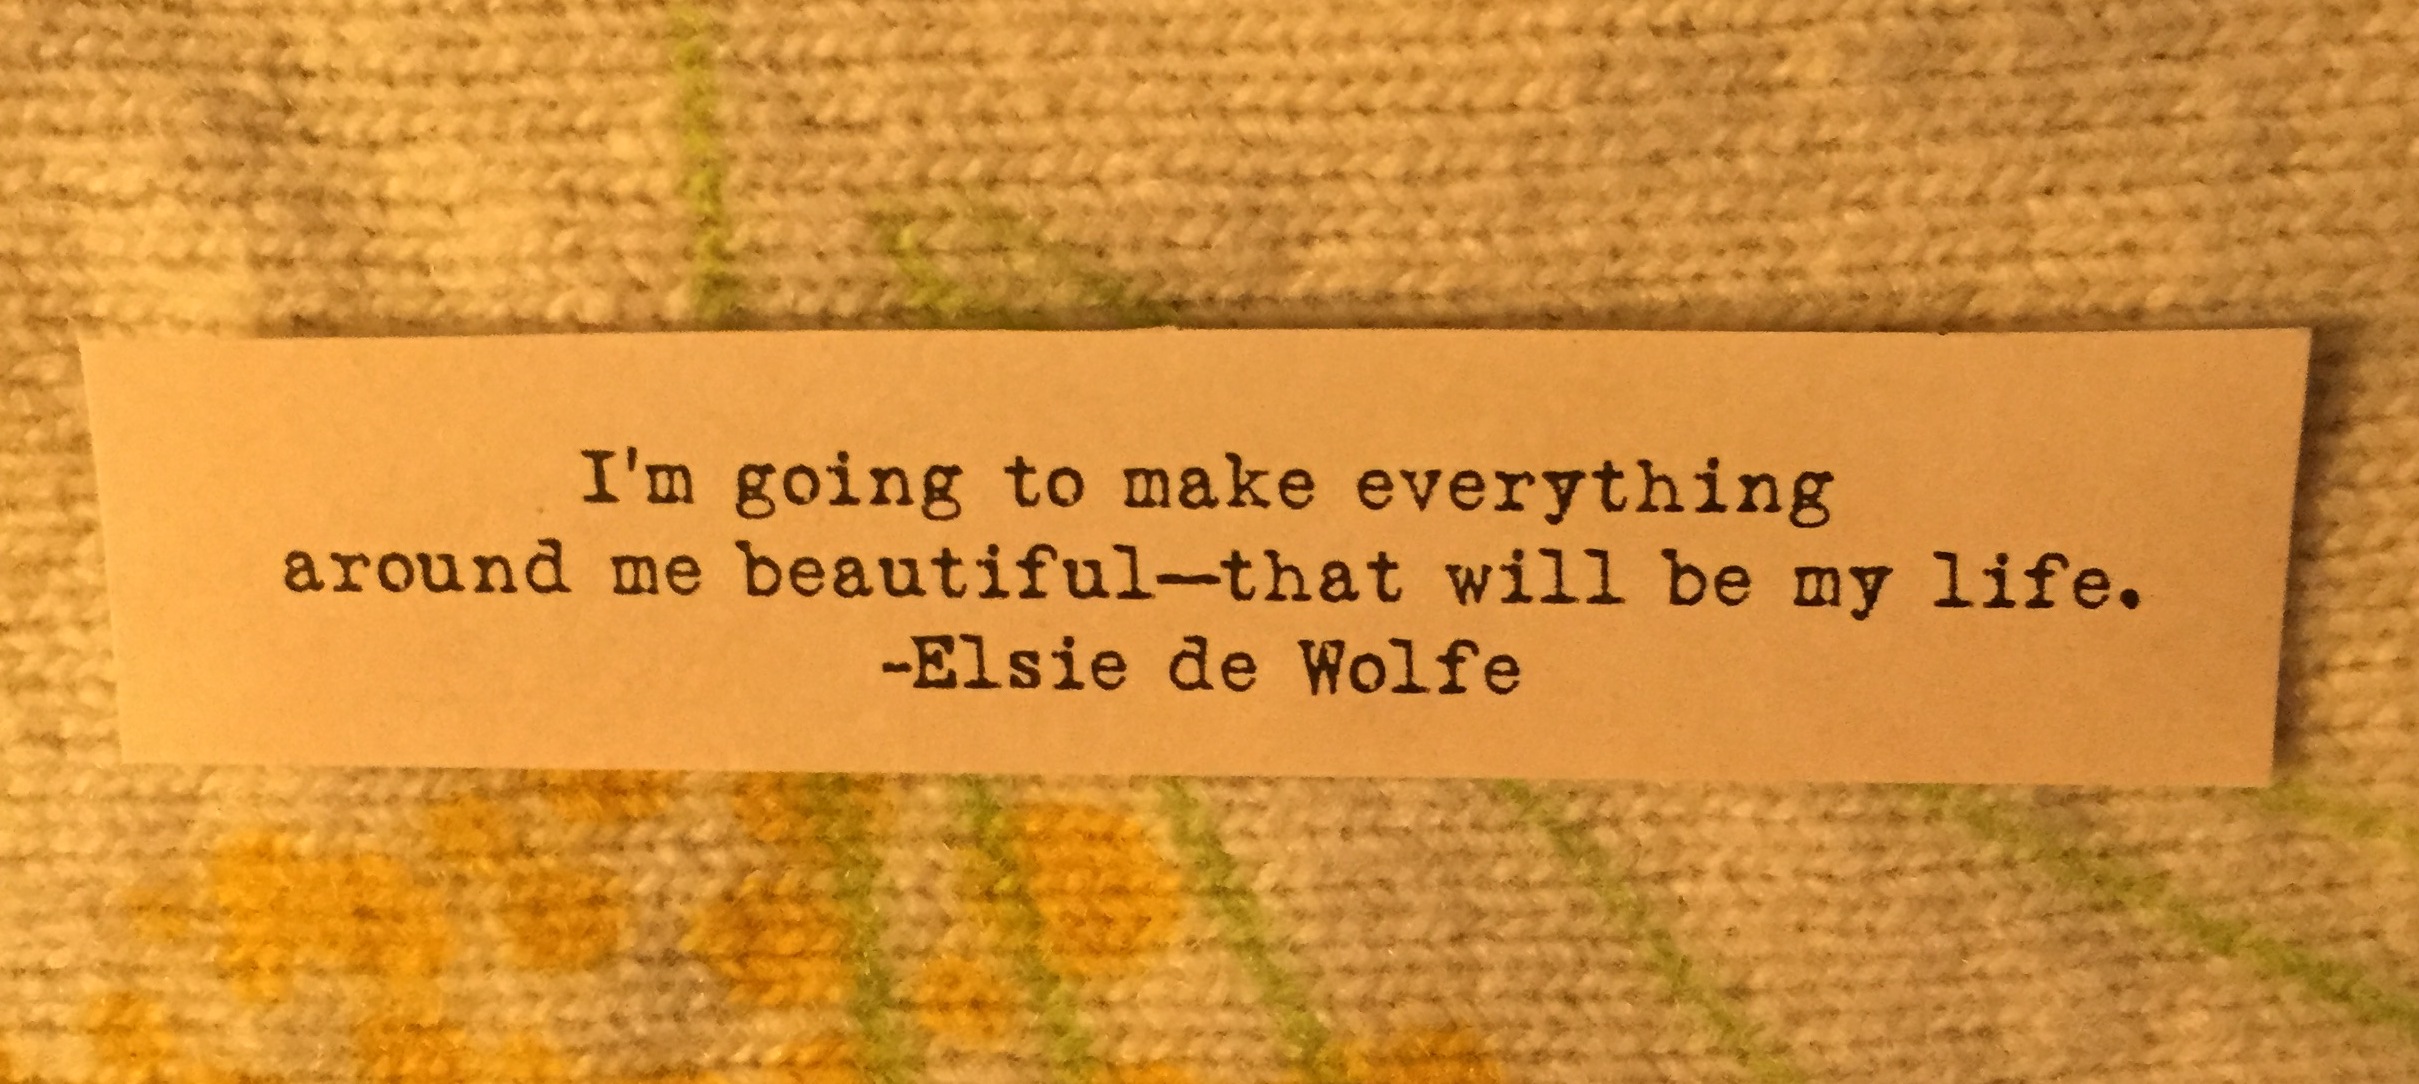 Elsie de Wolfe